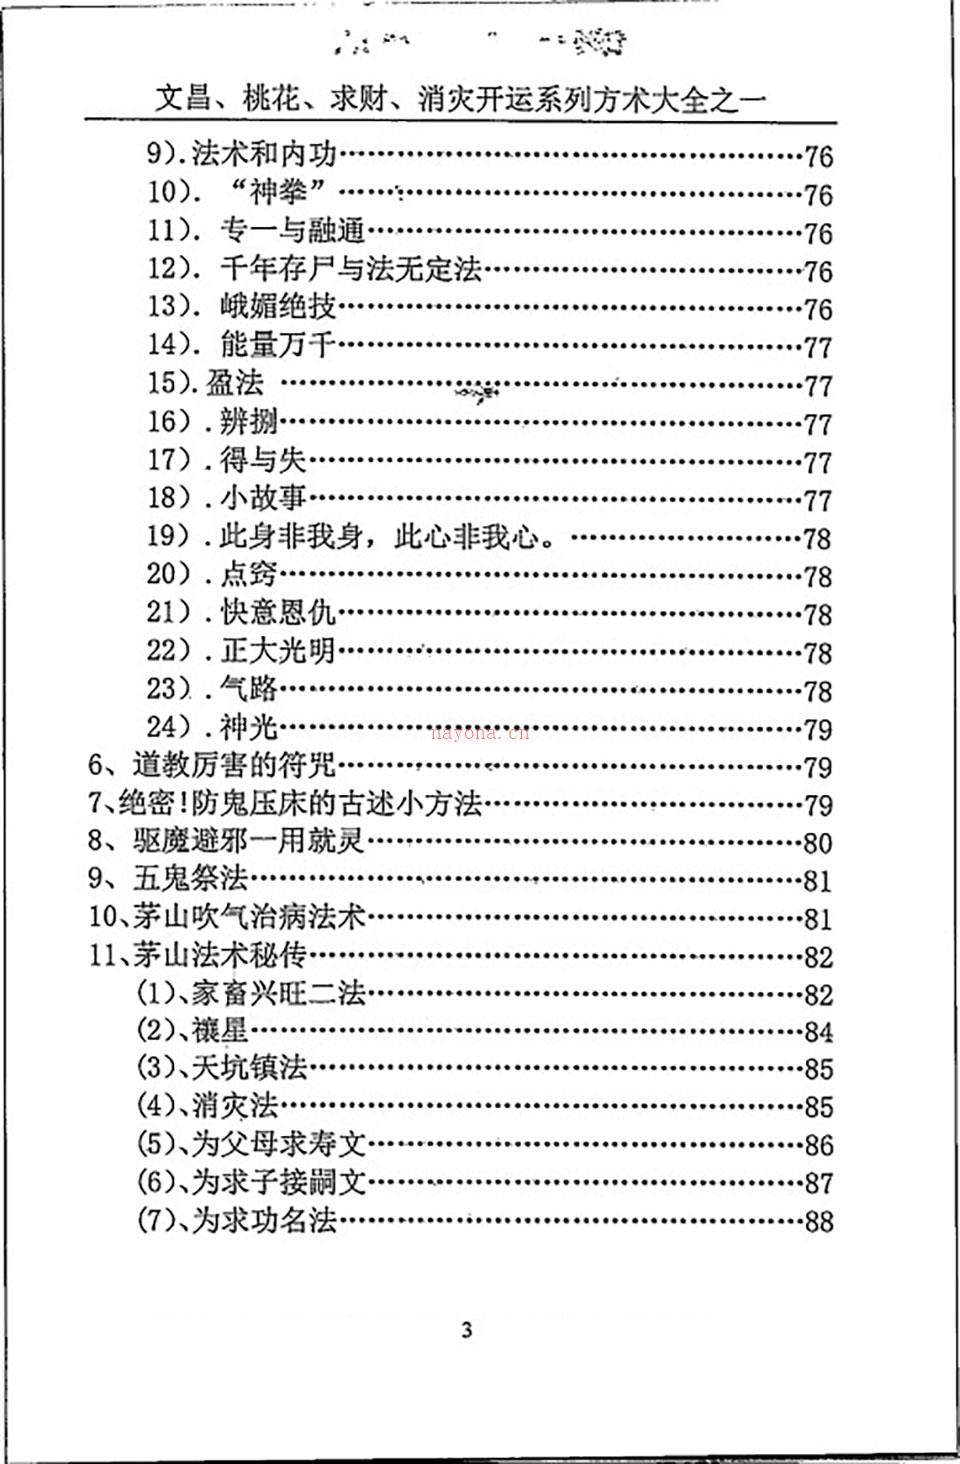 汤细加《消灾解难、改运方术汇编》.pdf 百度网盘资源